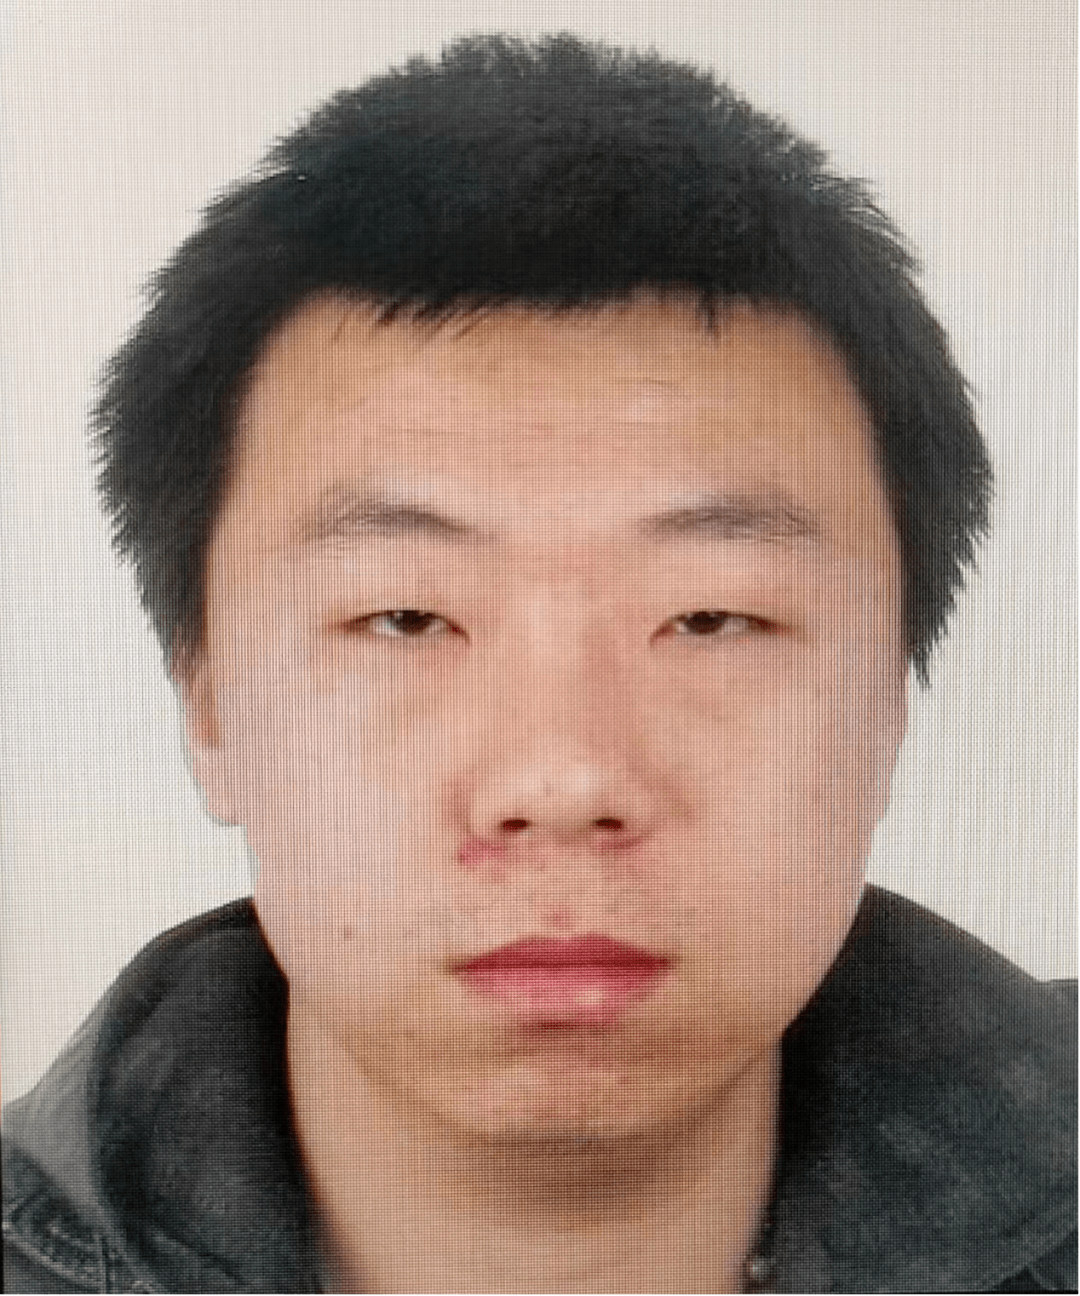 蒙古族身份证图片